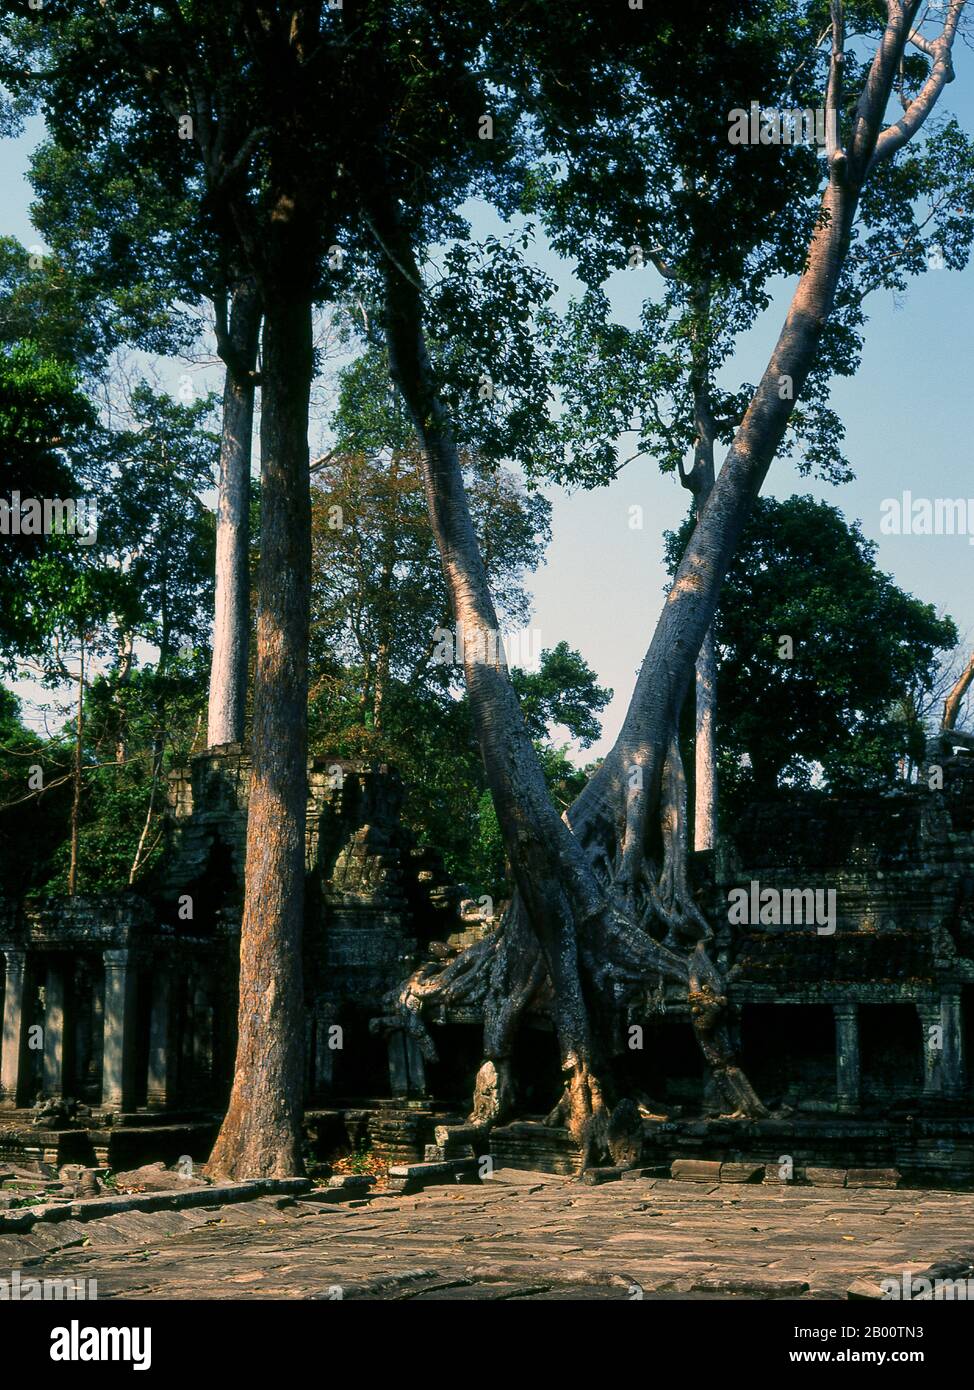 Cambogia: Piazzale d'ingresso orientale, Preah Khan, Angkor. Preah Khan (Tempio della Spada Sacra) è stato costruito nel tardo 12 ° secolo (1191) da Jayavarman VII e si trova appena a nord di Angkor Thom. Il tempio fu costruito sul luogo della vittoria di Jayavarman VII sui Cham invasori nel 1191. Era il centro di un'organizzazione consistente, con quasi 100,000 funzionari e funzionari. Fu un'università buddista alla volta. La divinità primaria del tempio è il boddhisatva Avalokiteshvara sotto forma di padre di Jayavarman. Foto Stock